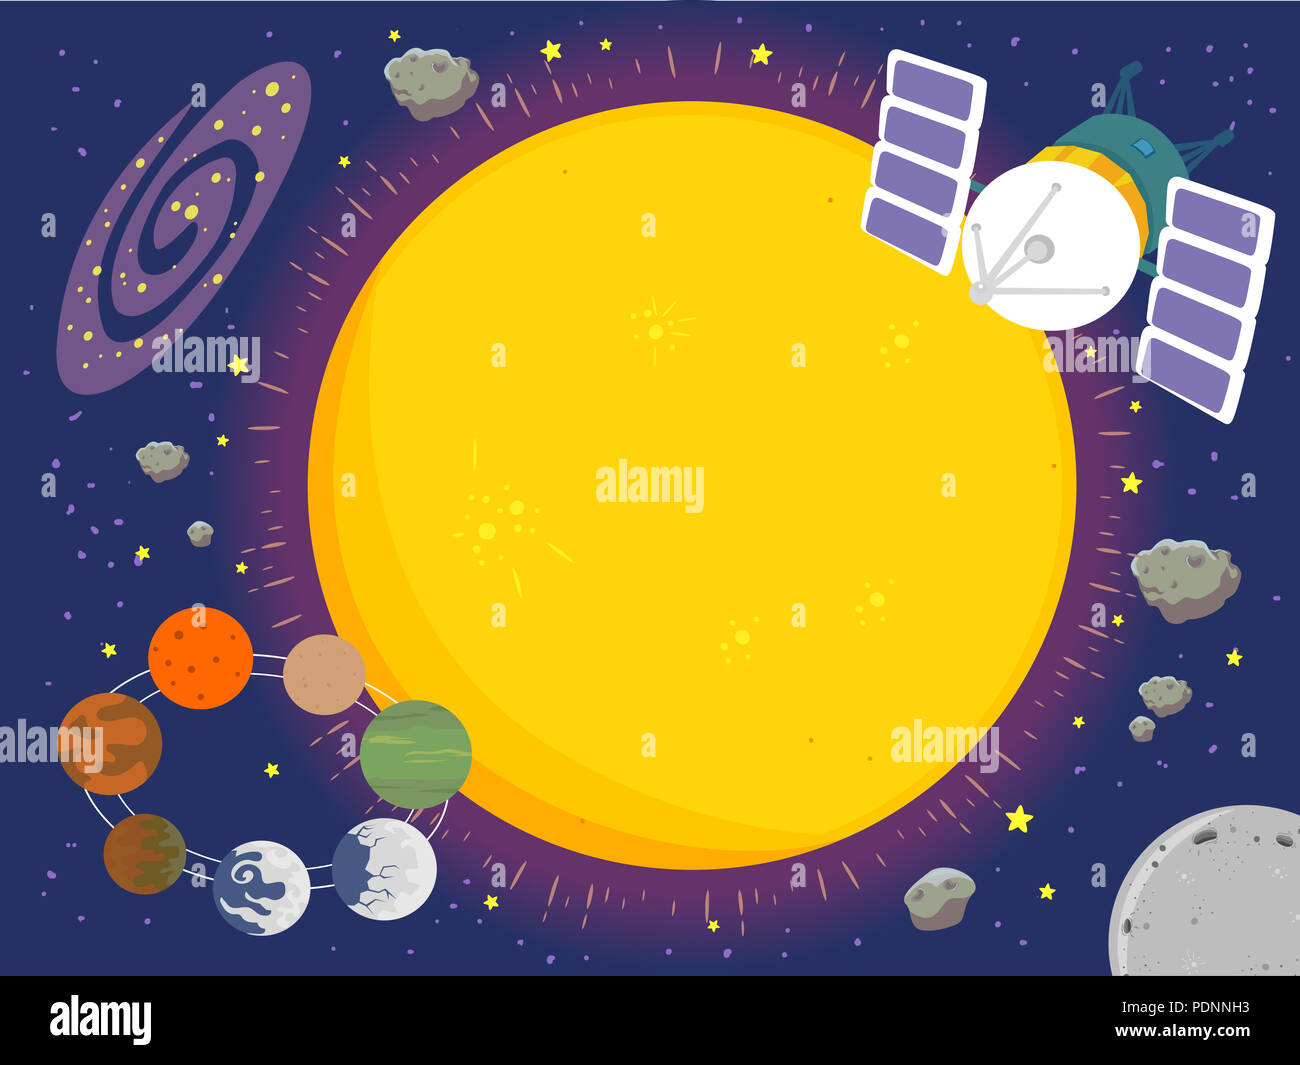 Illustrazione di astratta Trappist-1 stella con sette pianeti orbitanti Foto Stock